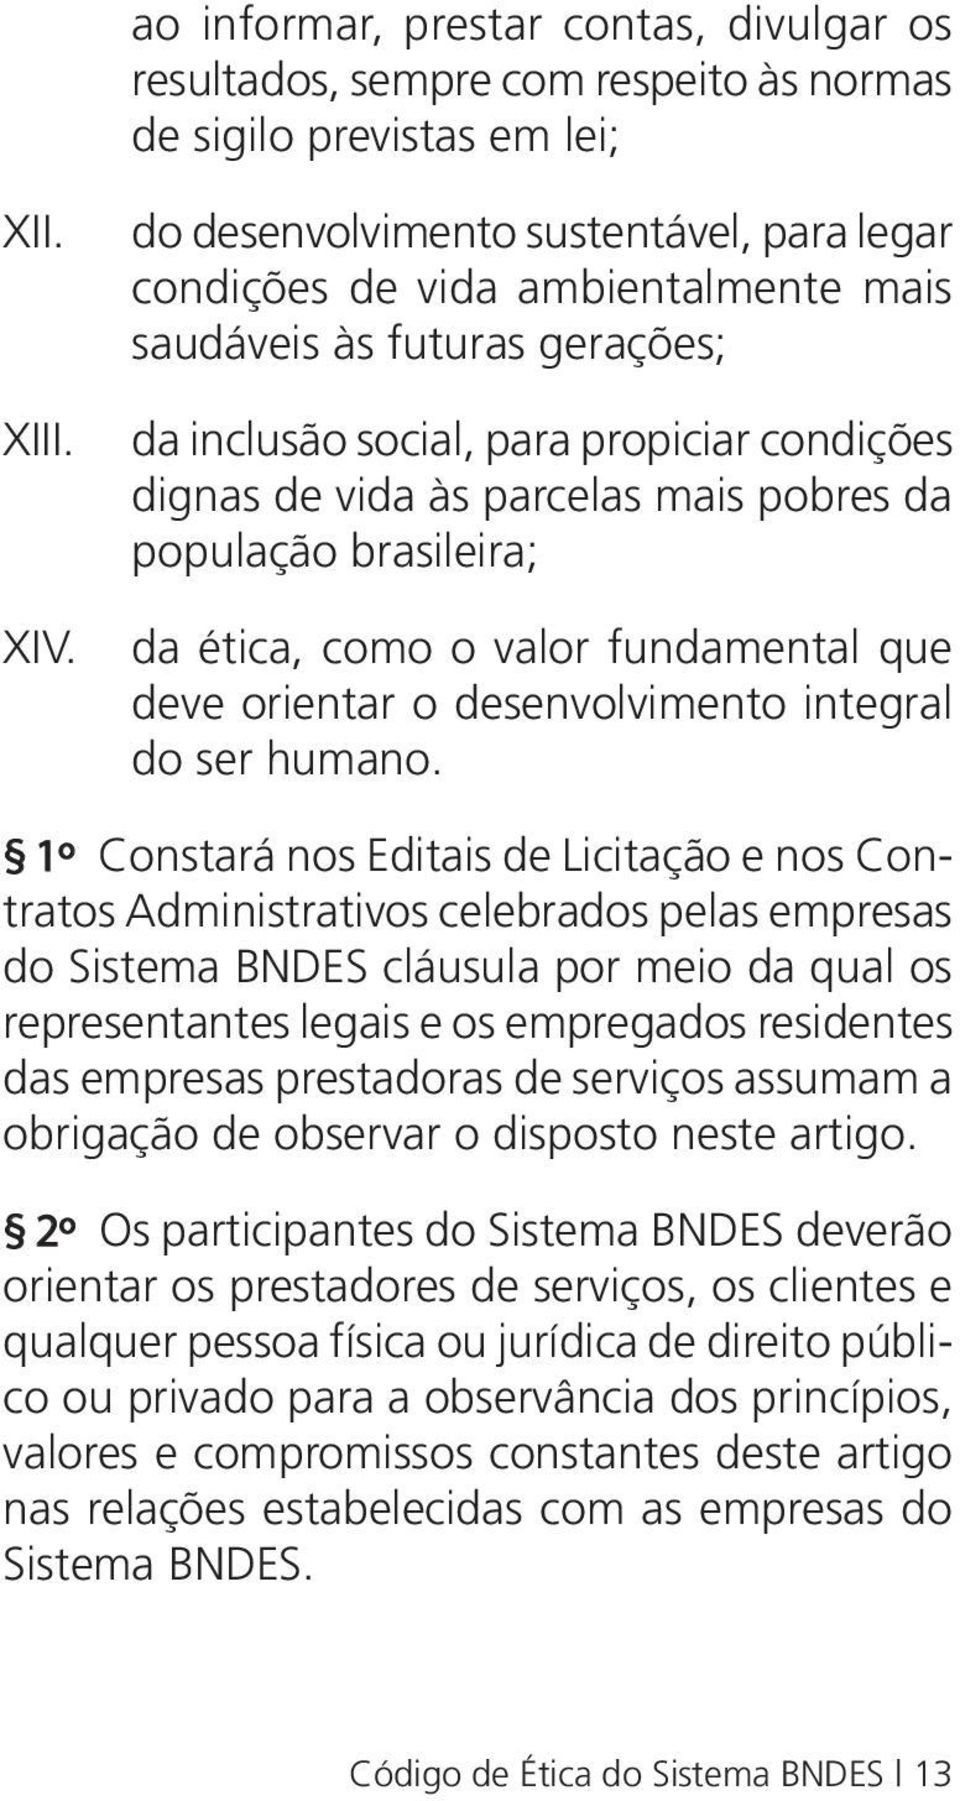 população brasileira; da ética, como o valor fundamental que deve orientar o desenvolvimento integral do ser humano.